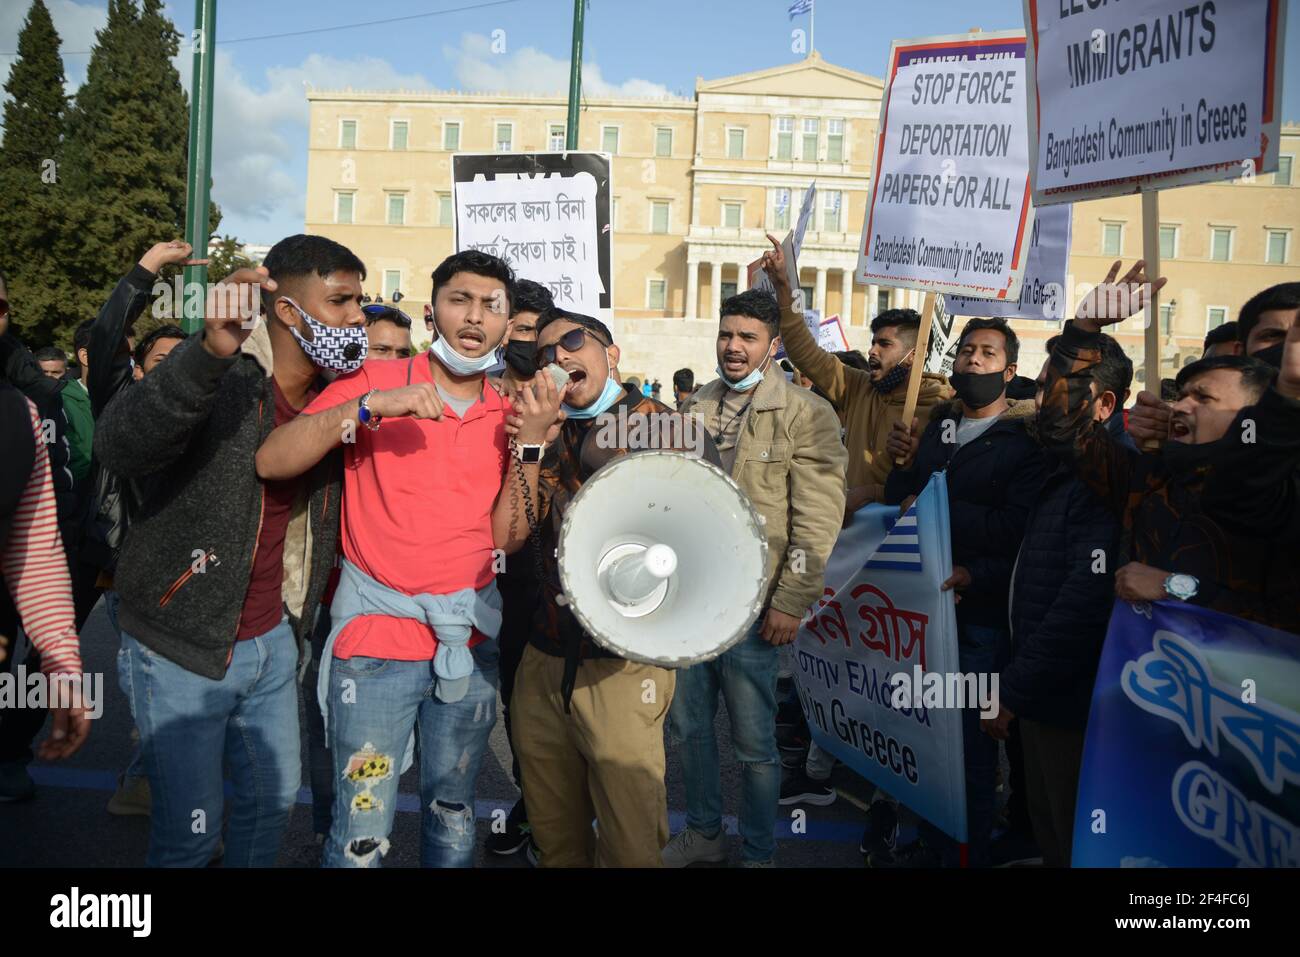 Rifugiati e immigrati irregolari provenienti dall'Asia e dall'Africa, marciano nel centro di Atene durante una manifestazione contro il razzismo, chiedendo frontiere aperte. Foto Stock